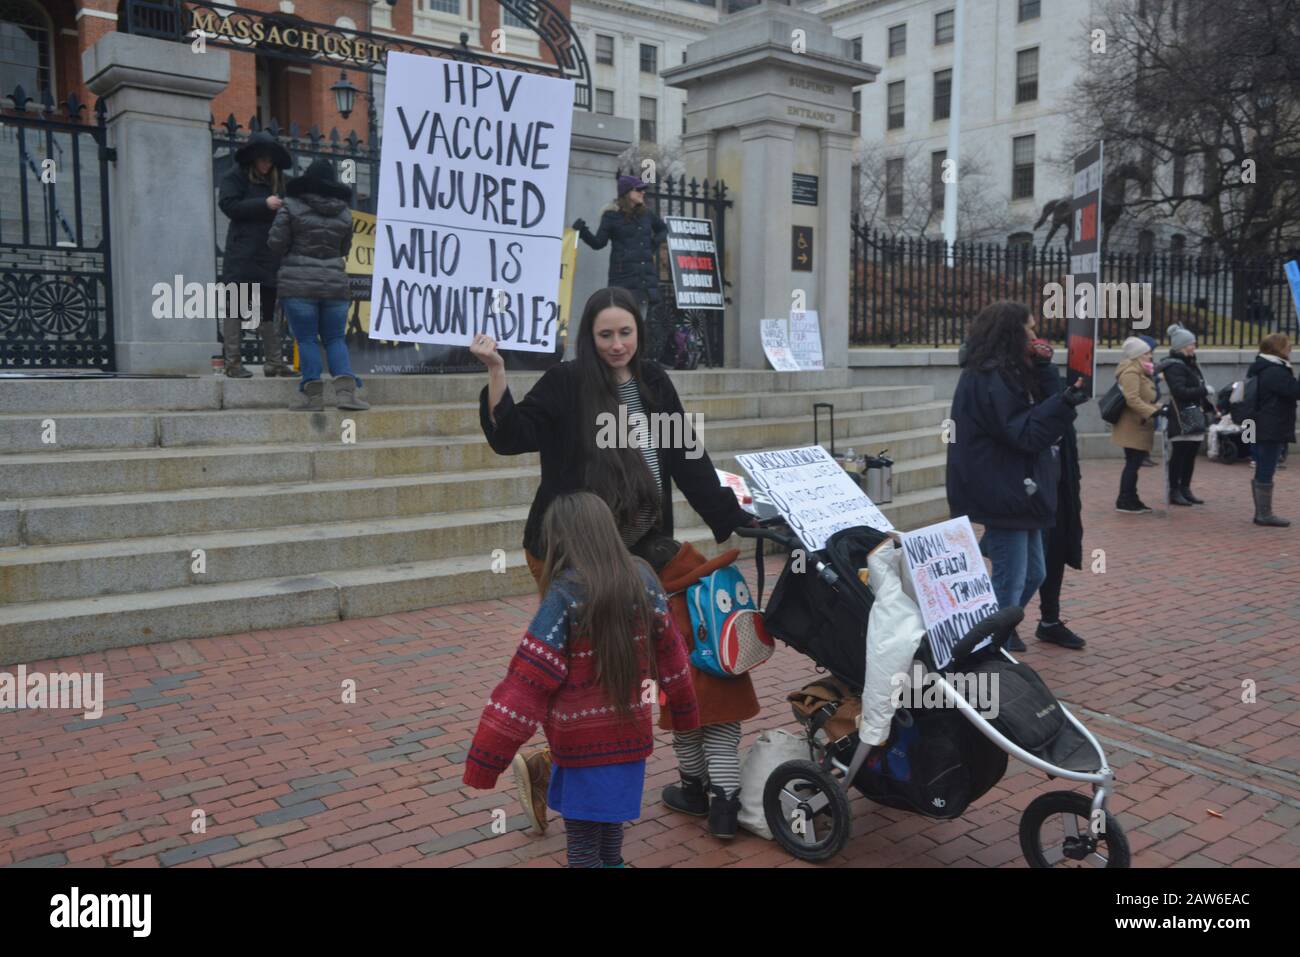 Boston, Massachusetts, États-Unis. 4 février 2020. Les promoteurs anti-vaccins démontrent à la maison d'État du Massachusetts à Boston crédit: Kenneth Martin/ZUMA Wire/Alay Live News Banque D'Images